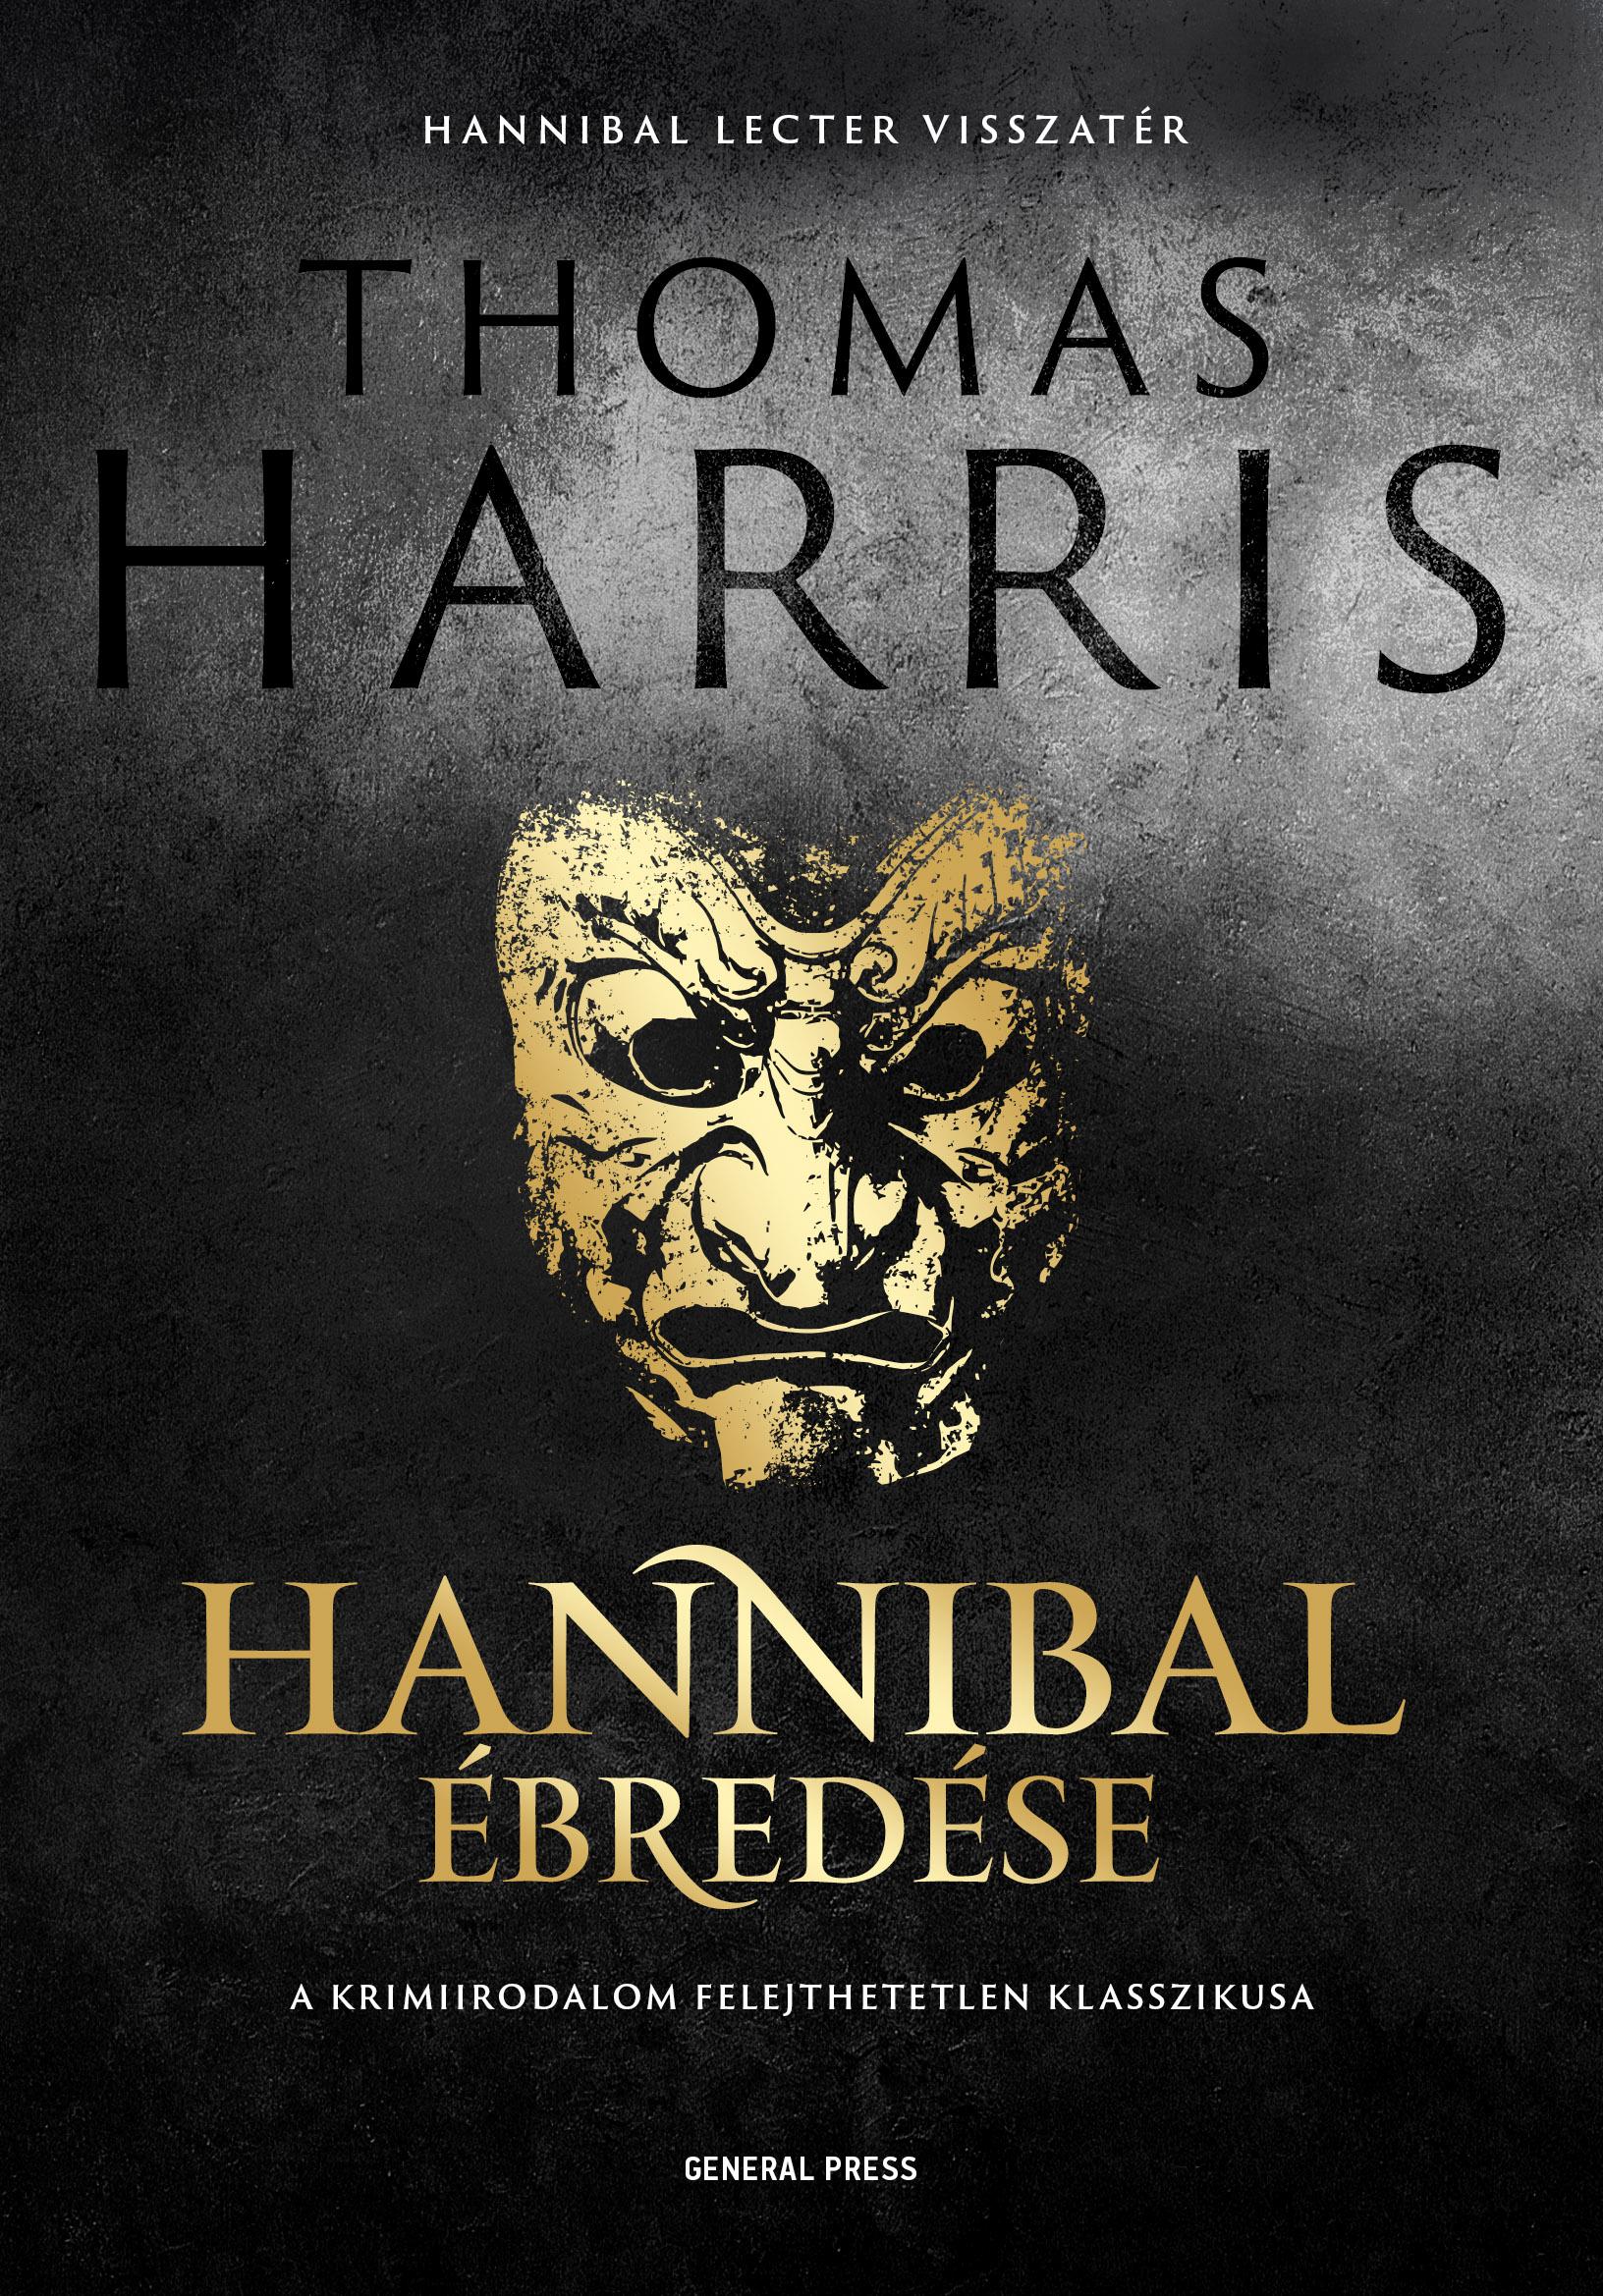 Thomas Harris - Hannibal ébredése